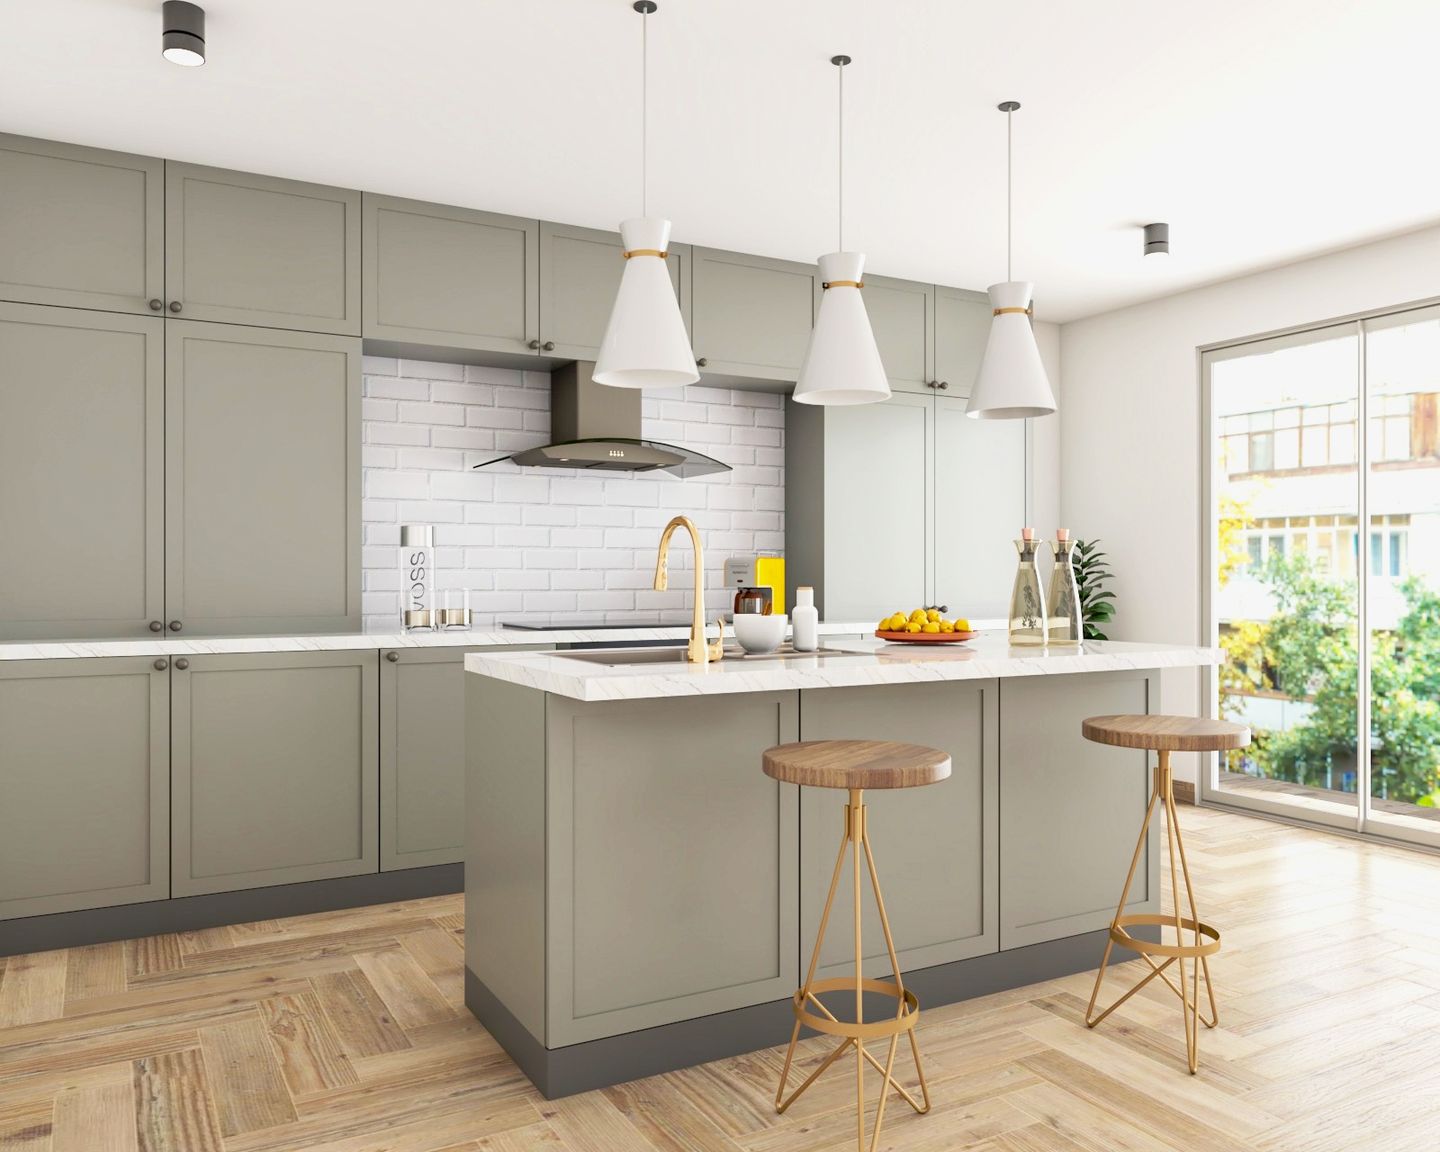 Modular Grey Kitchen Design With Kitchen Island - Livspace